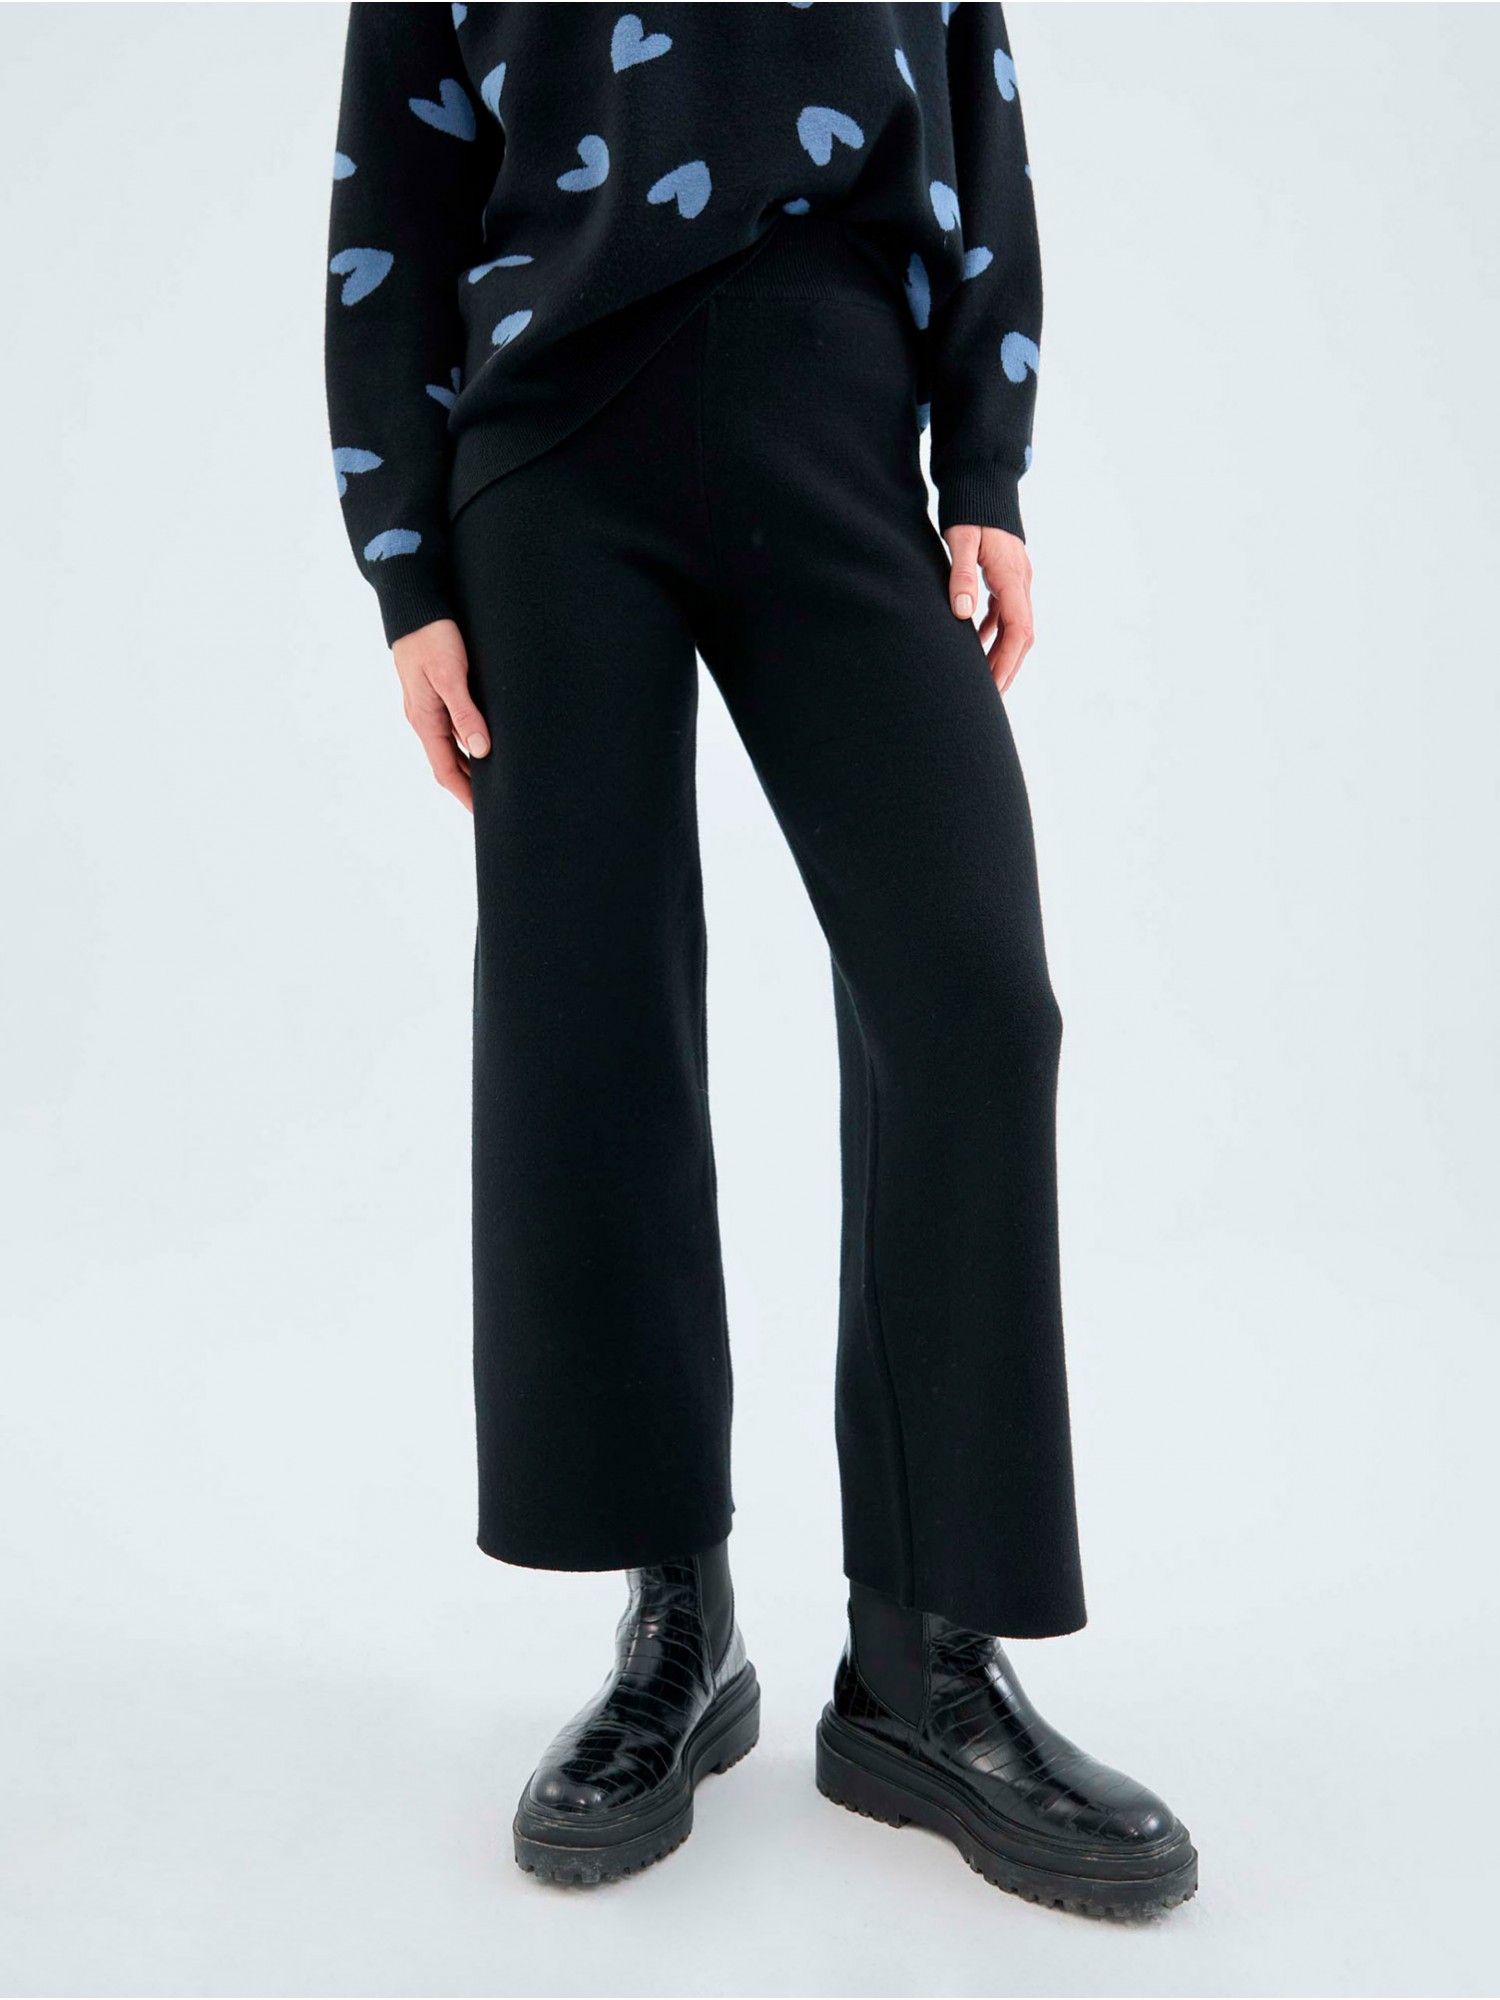 Pantalón de punto Wow. Colección AW23 Compañía Fantástica en candelascloset. Color negro, pernera recta y cintura elástica.